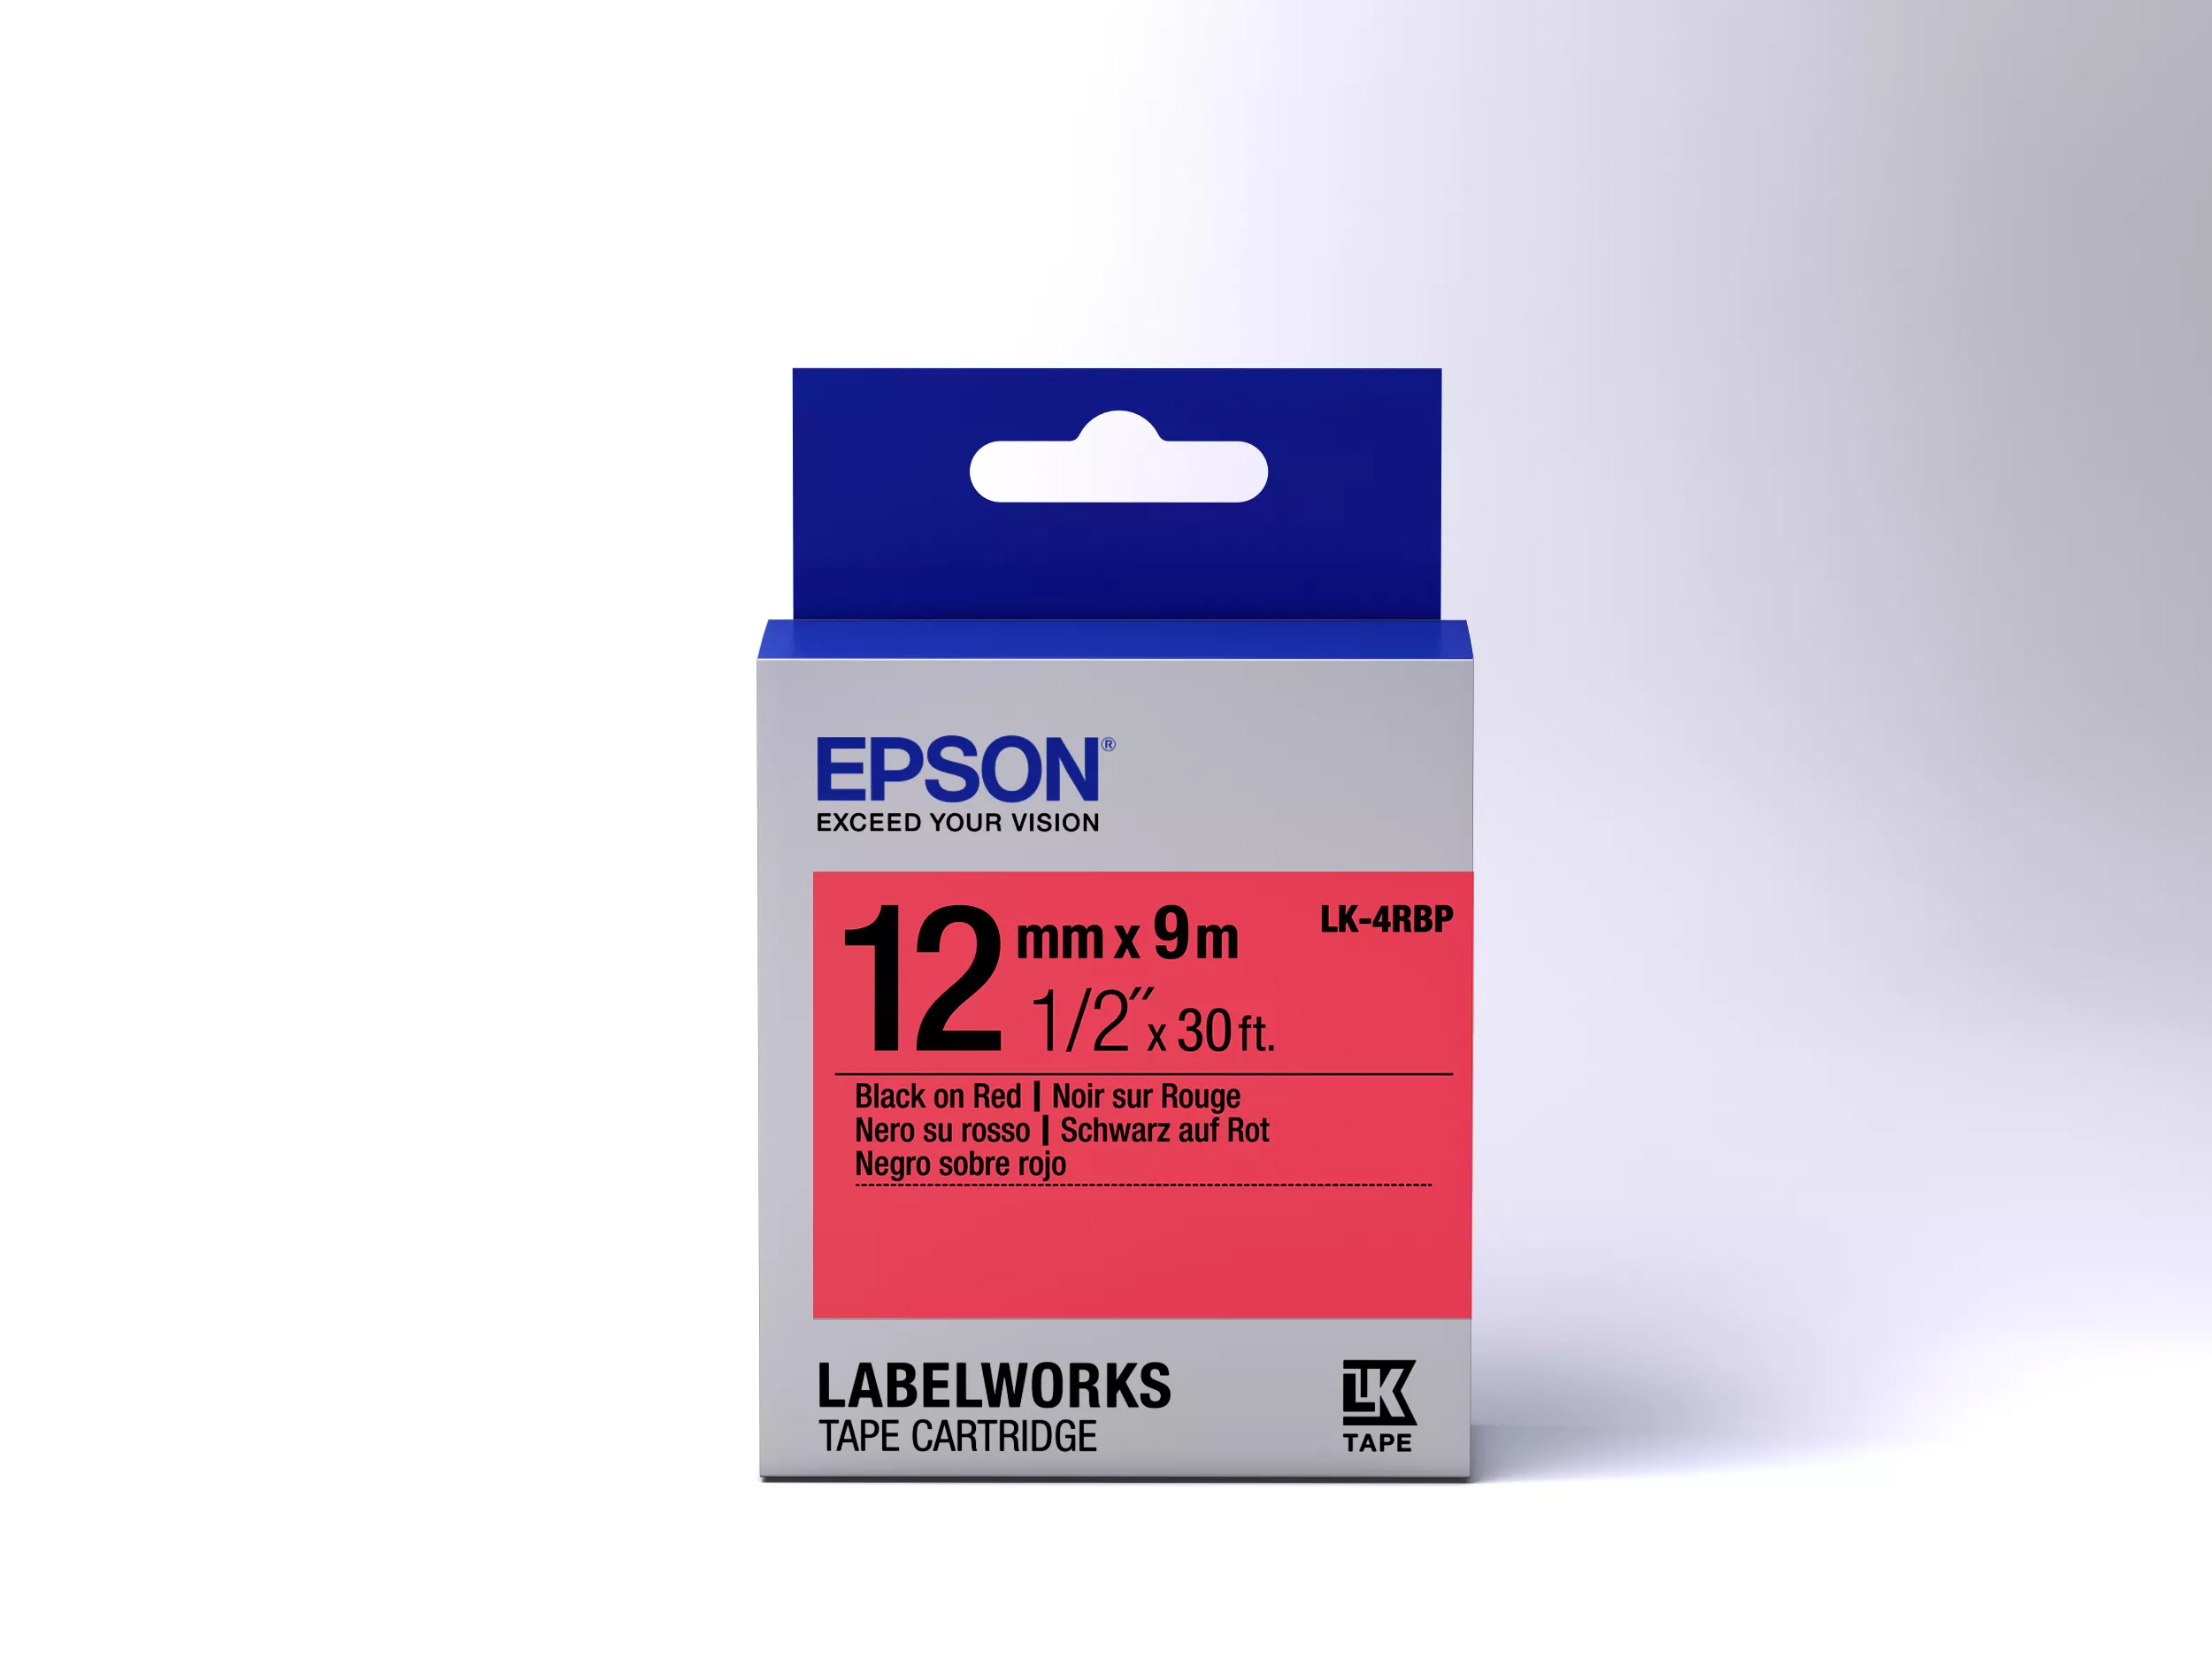 Vente Epson LK-4RBP - Couleur Pastel - Noir sur Epson au meilleur prix - visuel 2